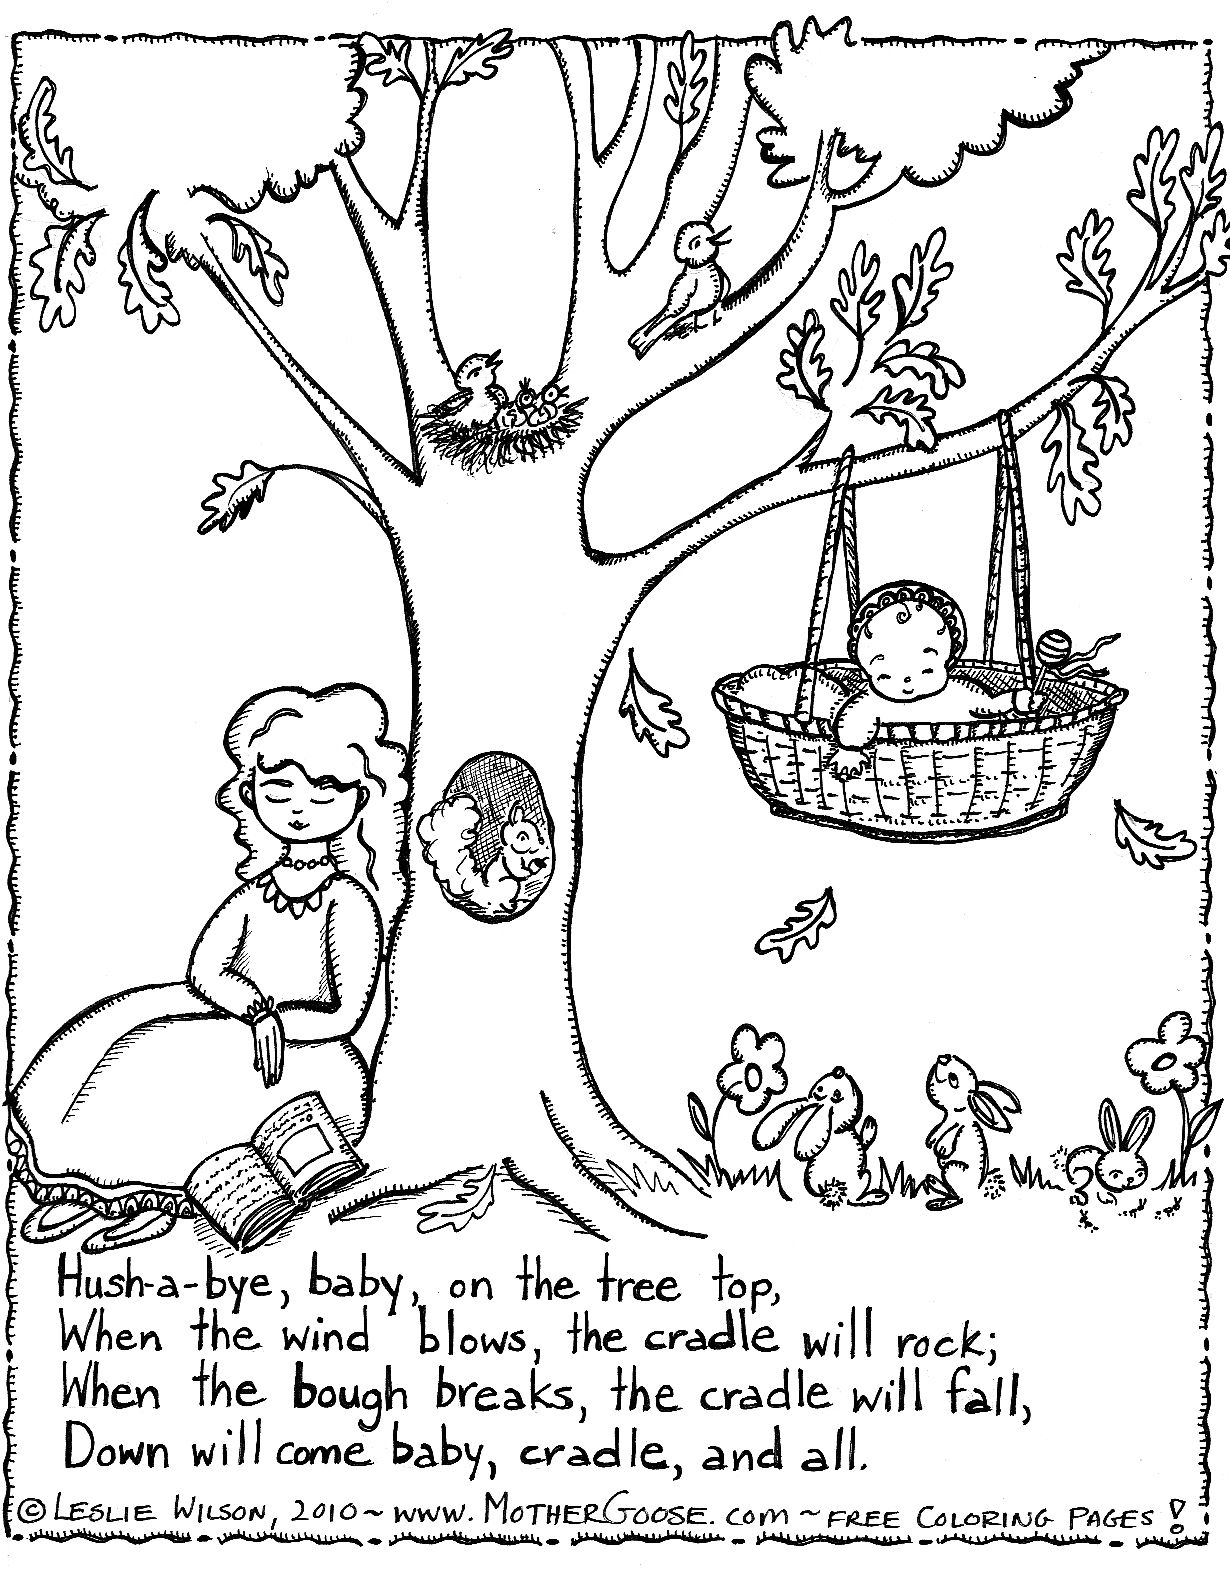 Nursery Rhyme Coloring Page | Teaching - Nursery Rhymes/mother Goose - Mother Goose Coloring Pages Free Printable